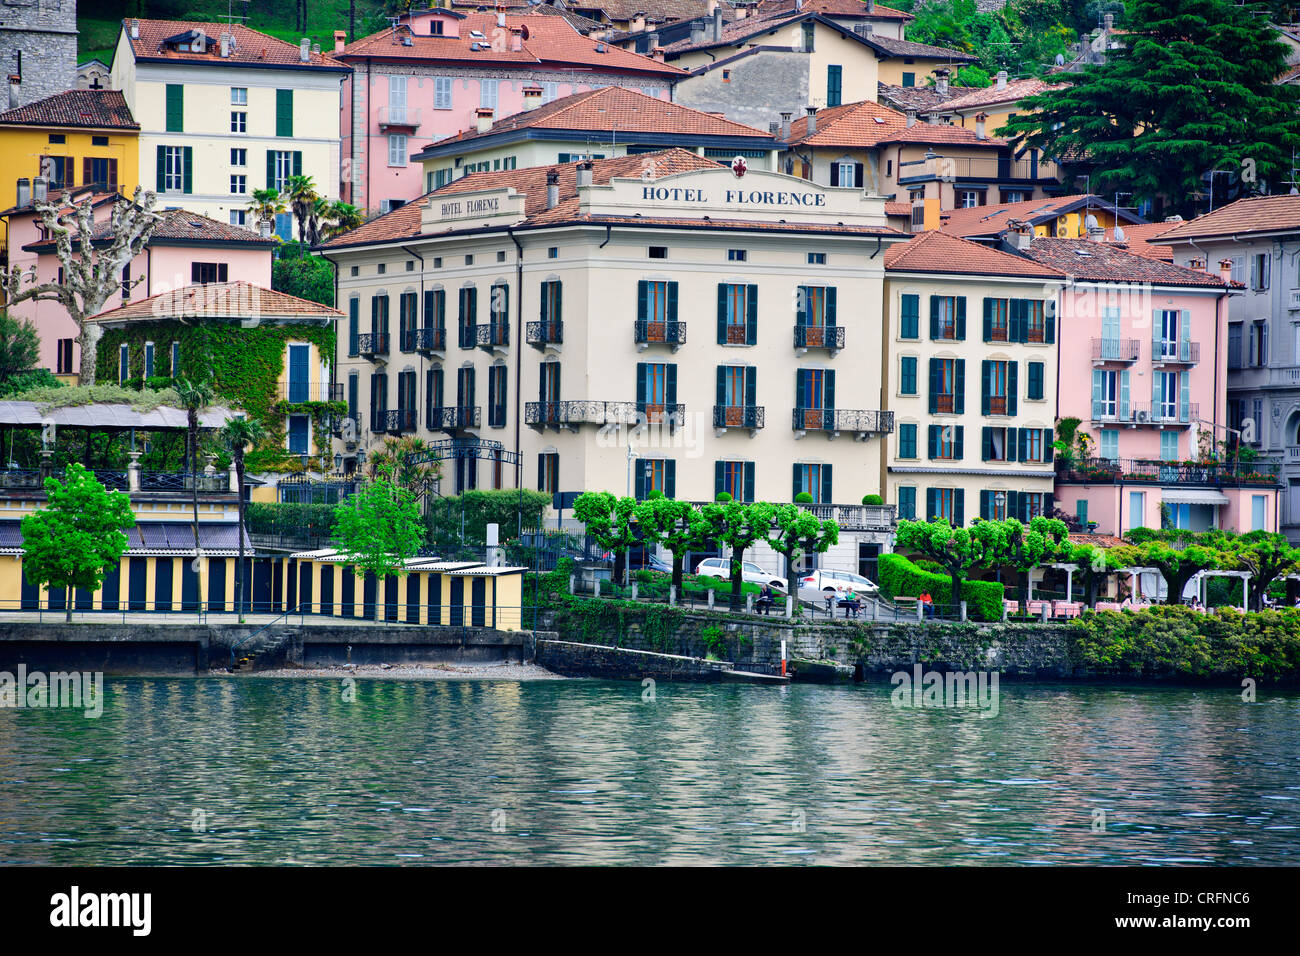 Bellagio, See überqueren, Hotels, Restaurants auf der Vorderseite zurück Straßen, Geschäfte, Blick auf den See, Gärten, Comer See, italienische Seen, Italien Stockfoto